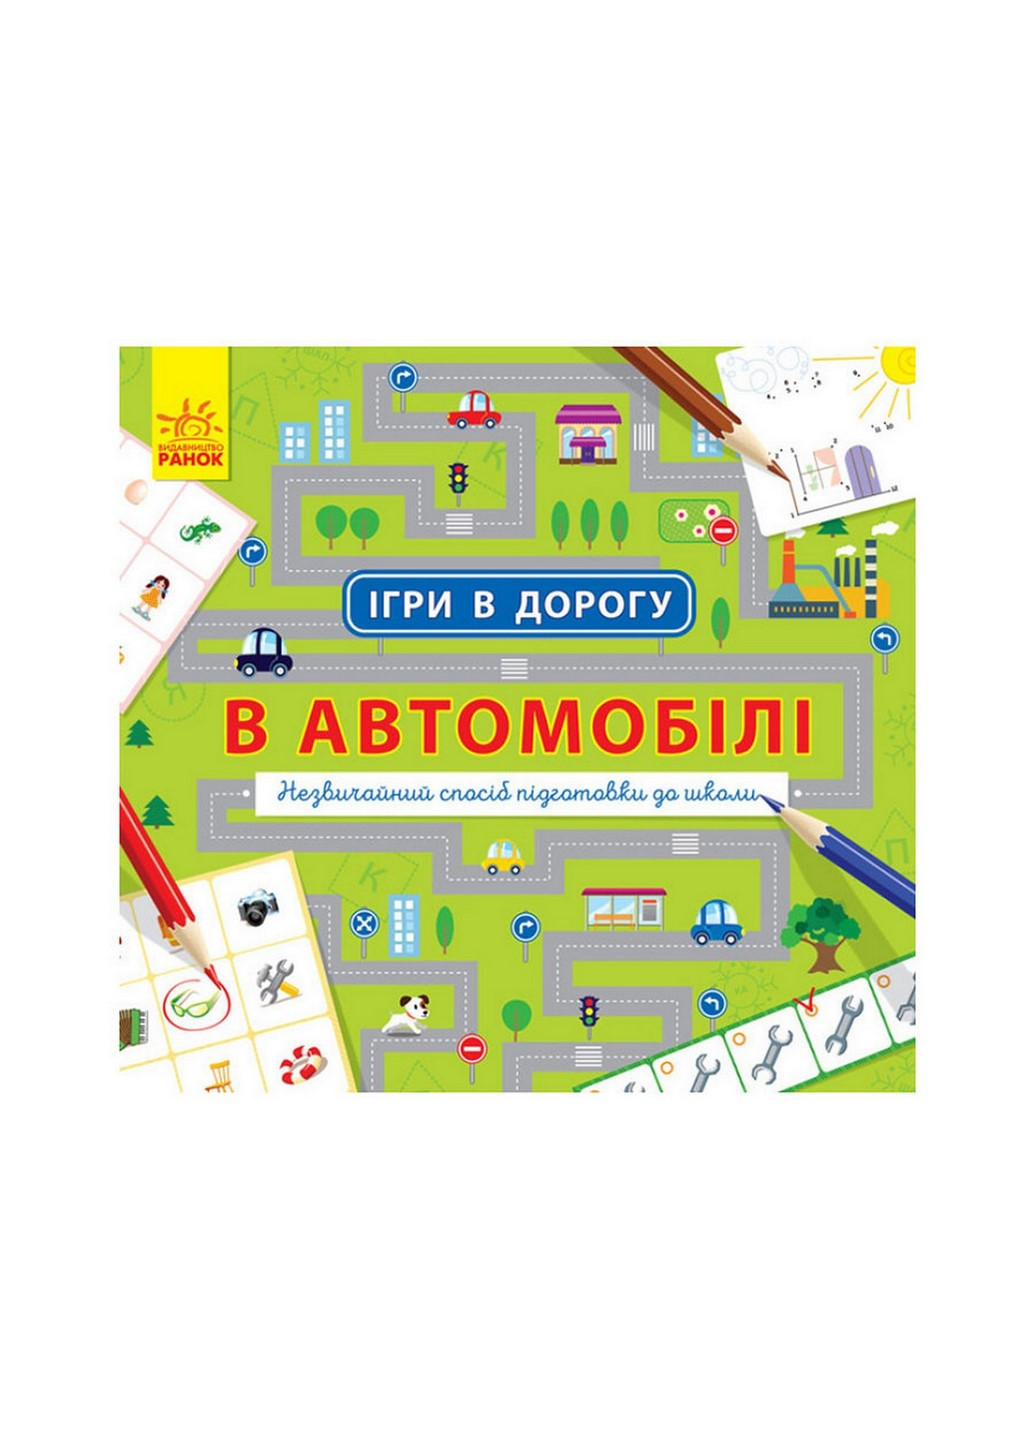 Игры в дорогу: В автомобиле Ранок 932002 на украинском языке Ranok Creative (260515816)